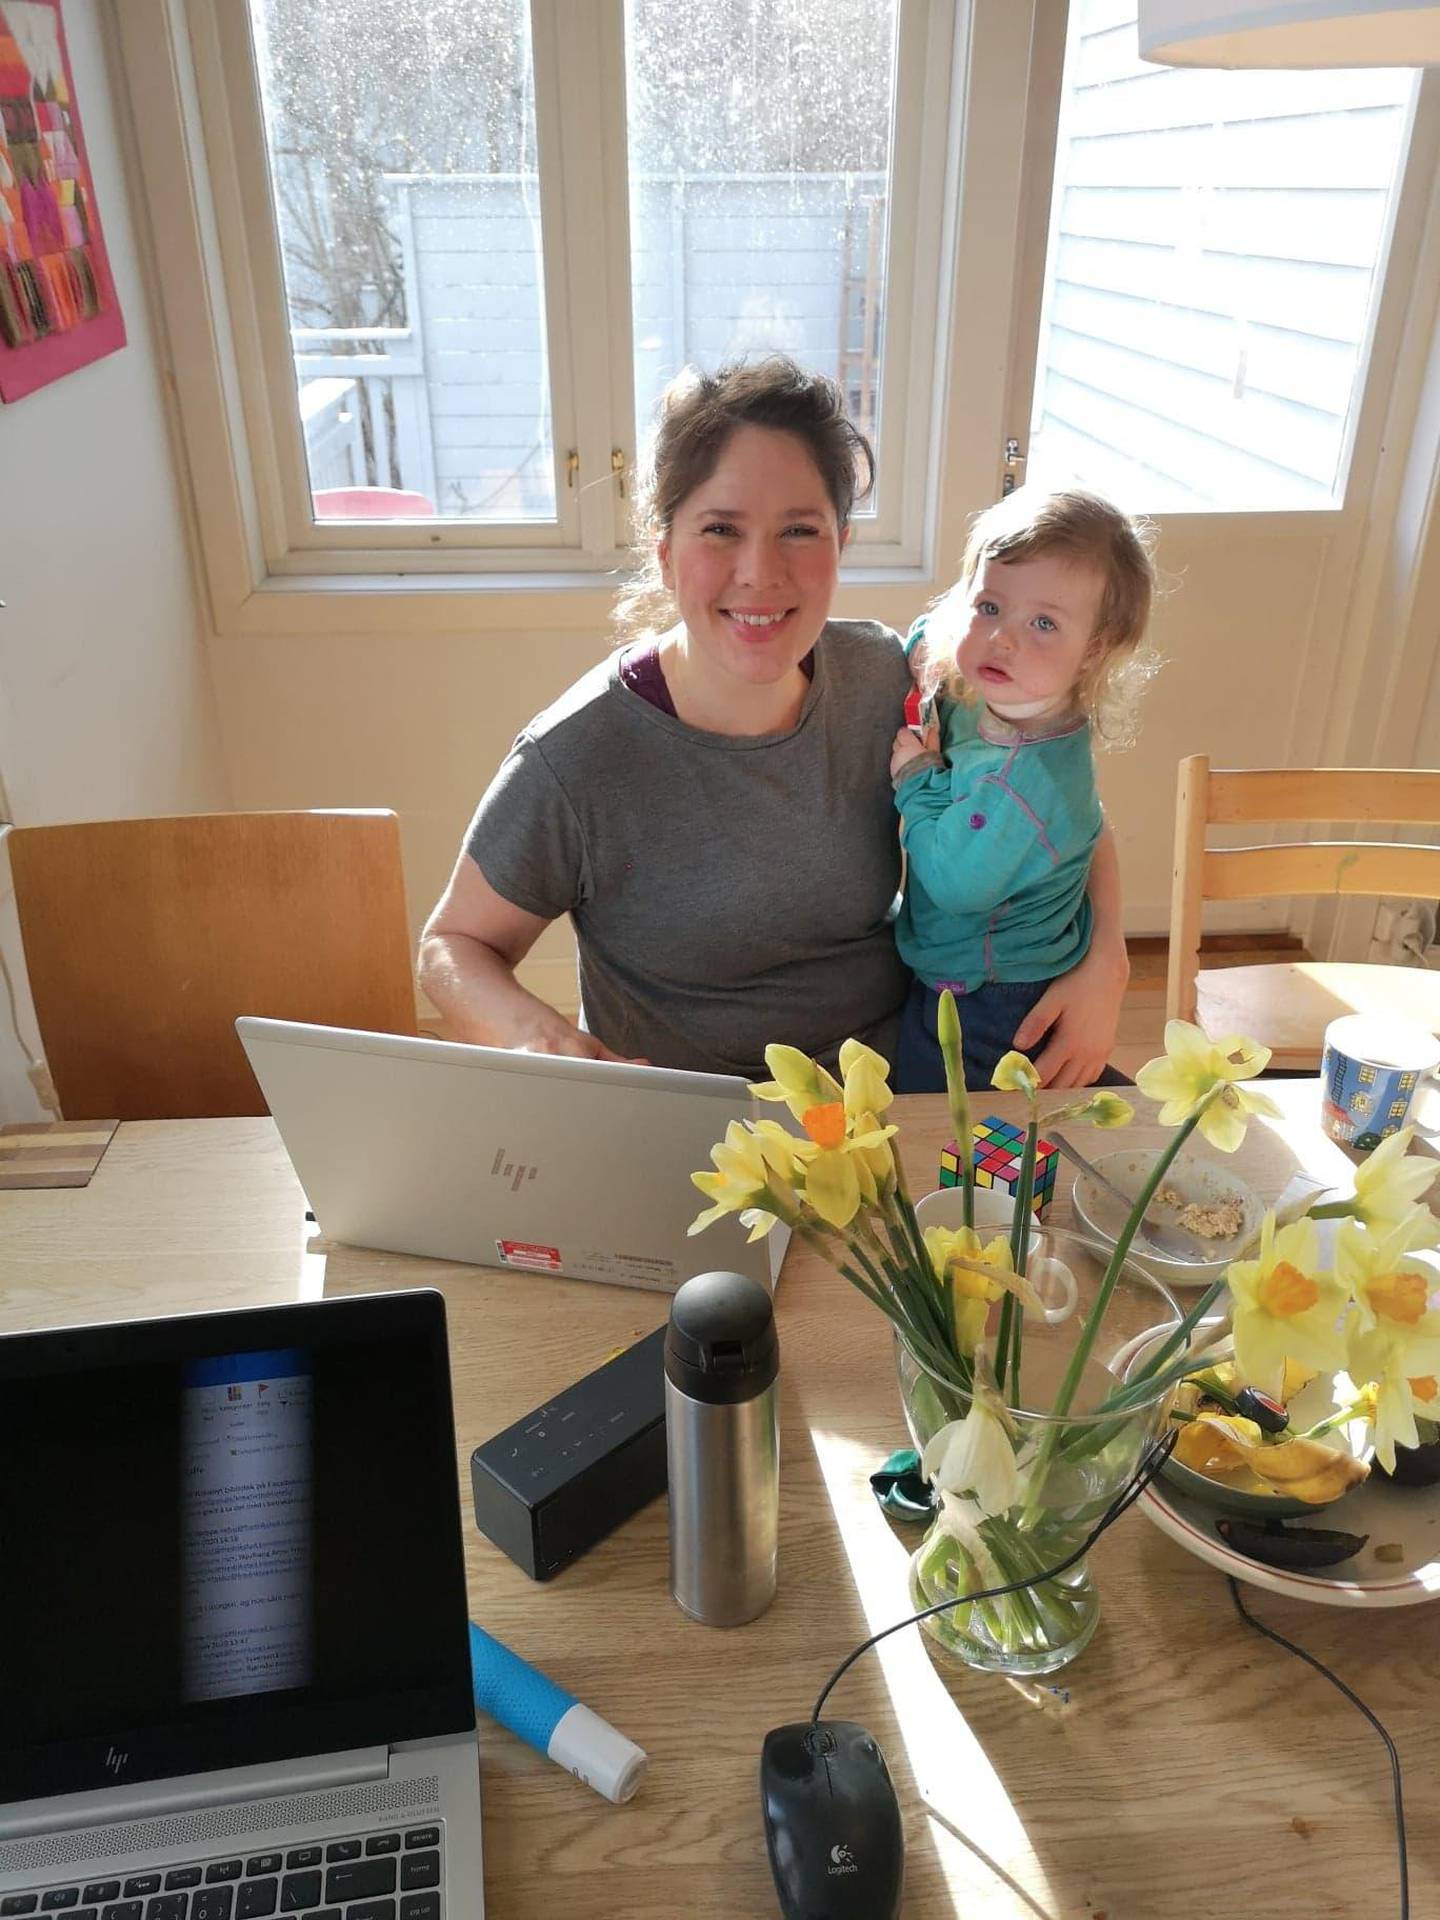 Kulturformidler, Christine Haugsten Ellefsen, benytter dagene med hjemmekontor til å lage digitale, kulturelle opplevelser for barn på Facebook-siden Barnesyssel. Lille Ronja kvalitetssikrer arbeidet.